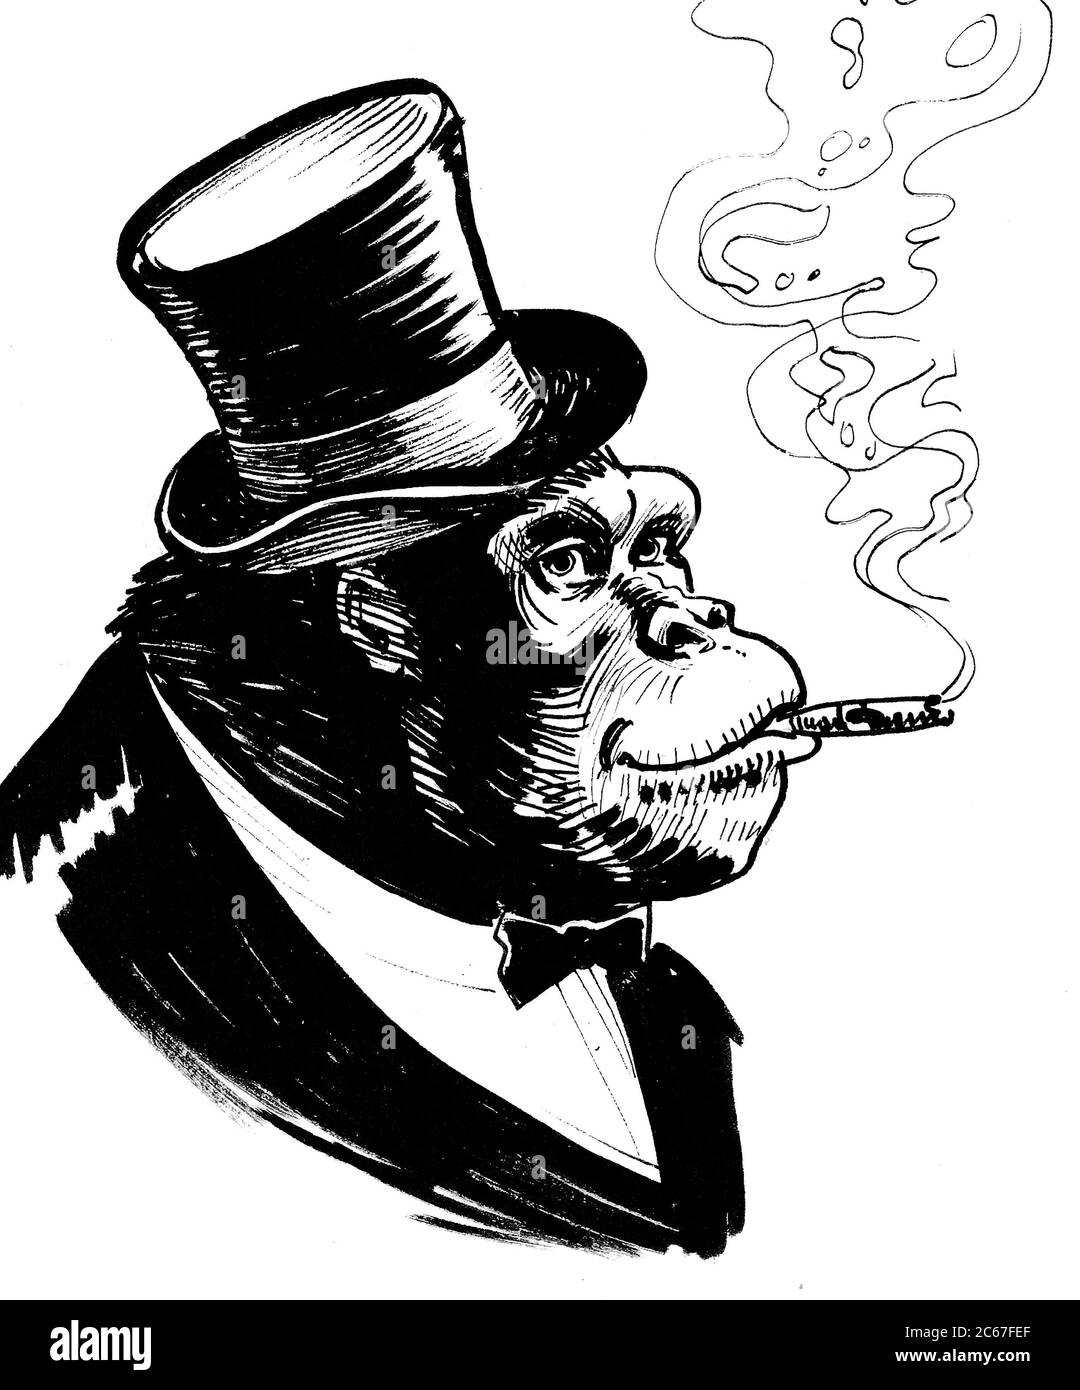 Gorille riche en cylindre avec un cigare. Dessin noir et blanc Banque D'Images